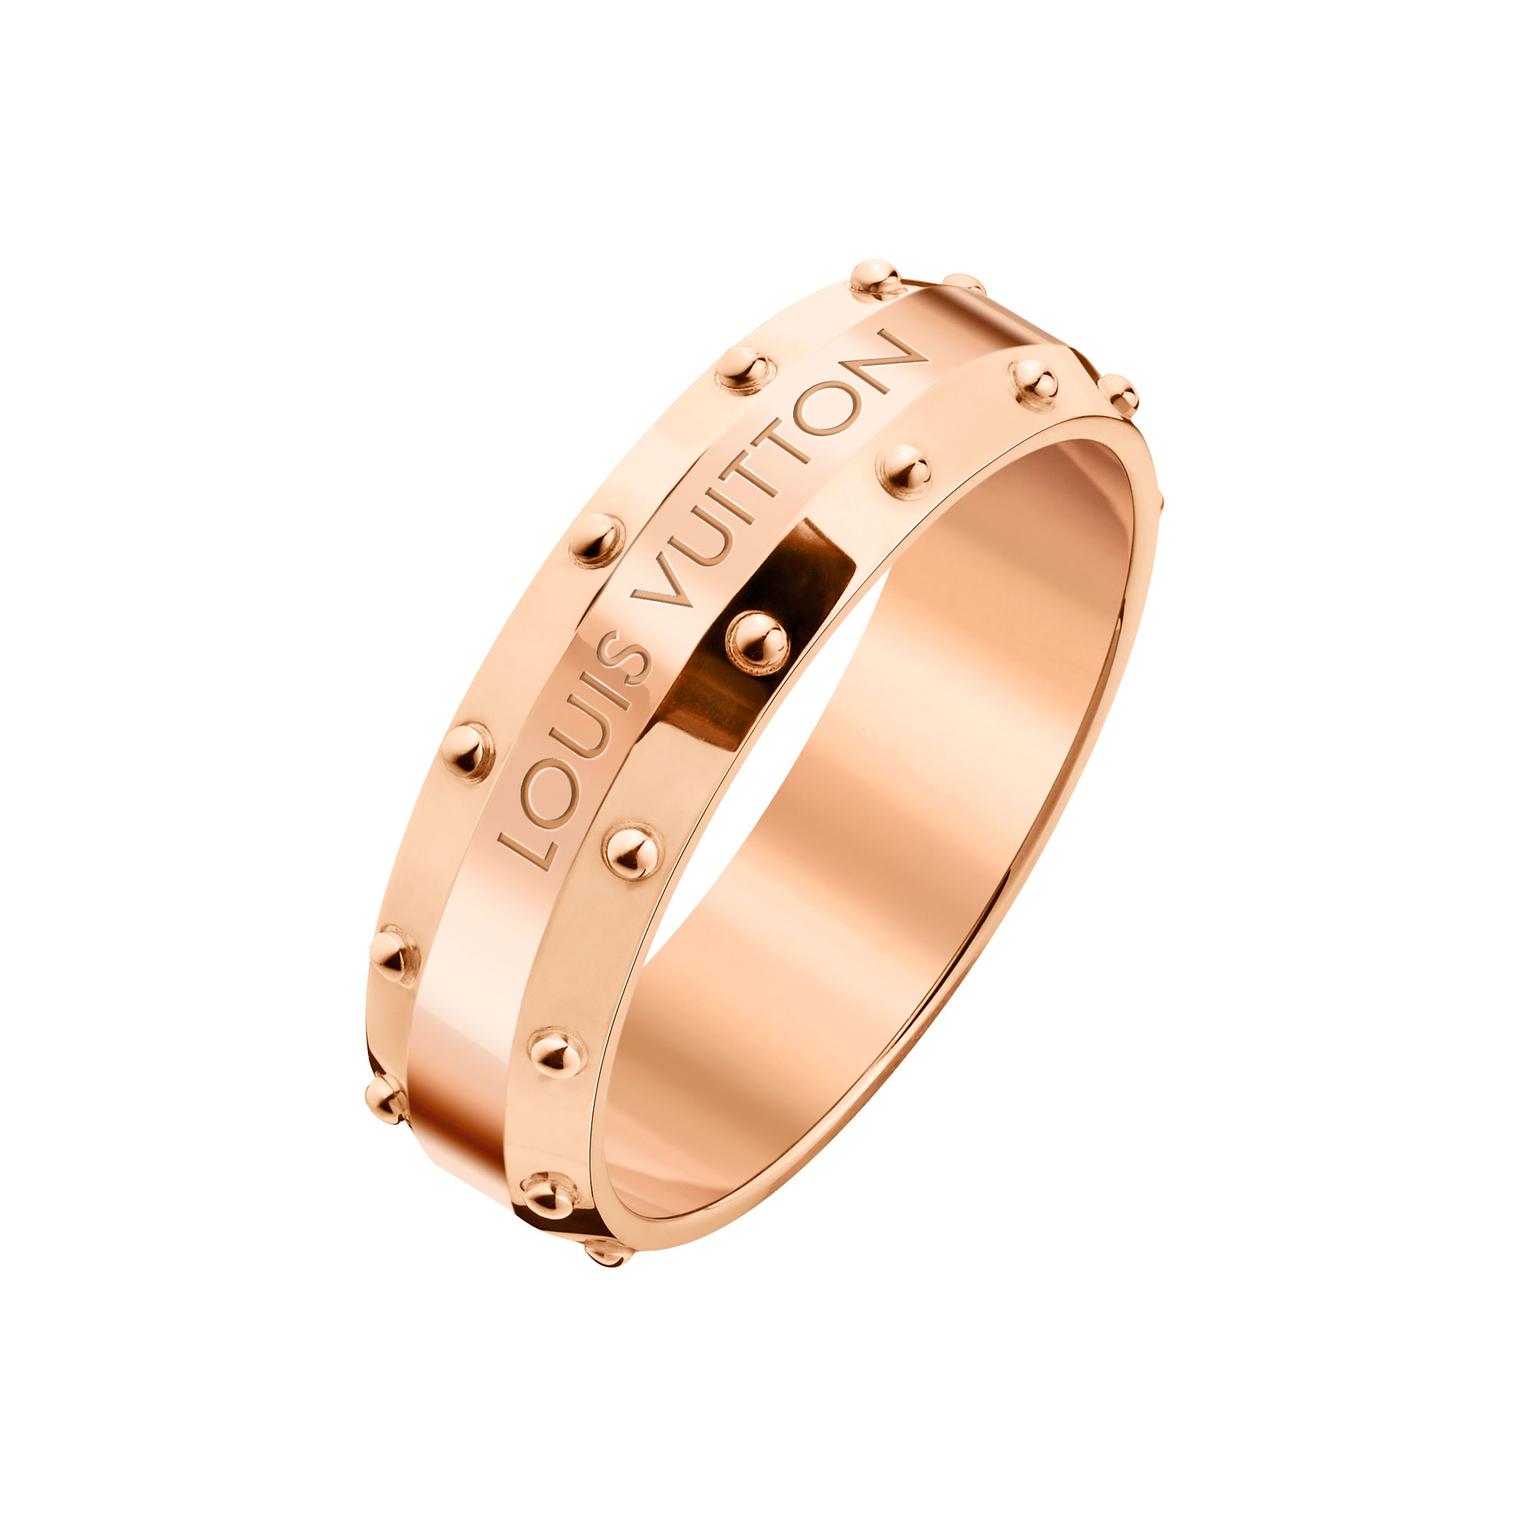 Louis Vuitton Emprise pink gold ring